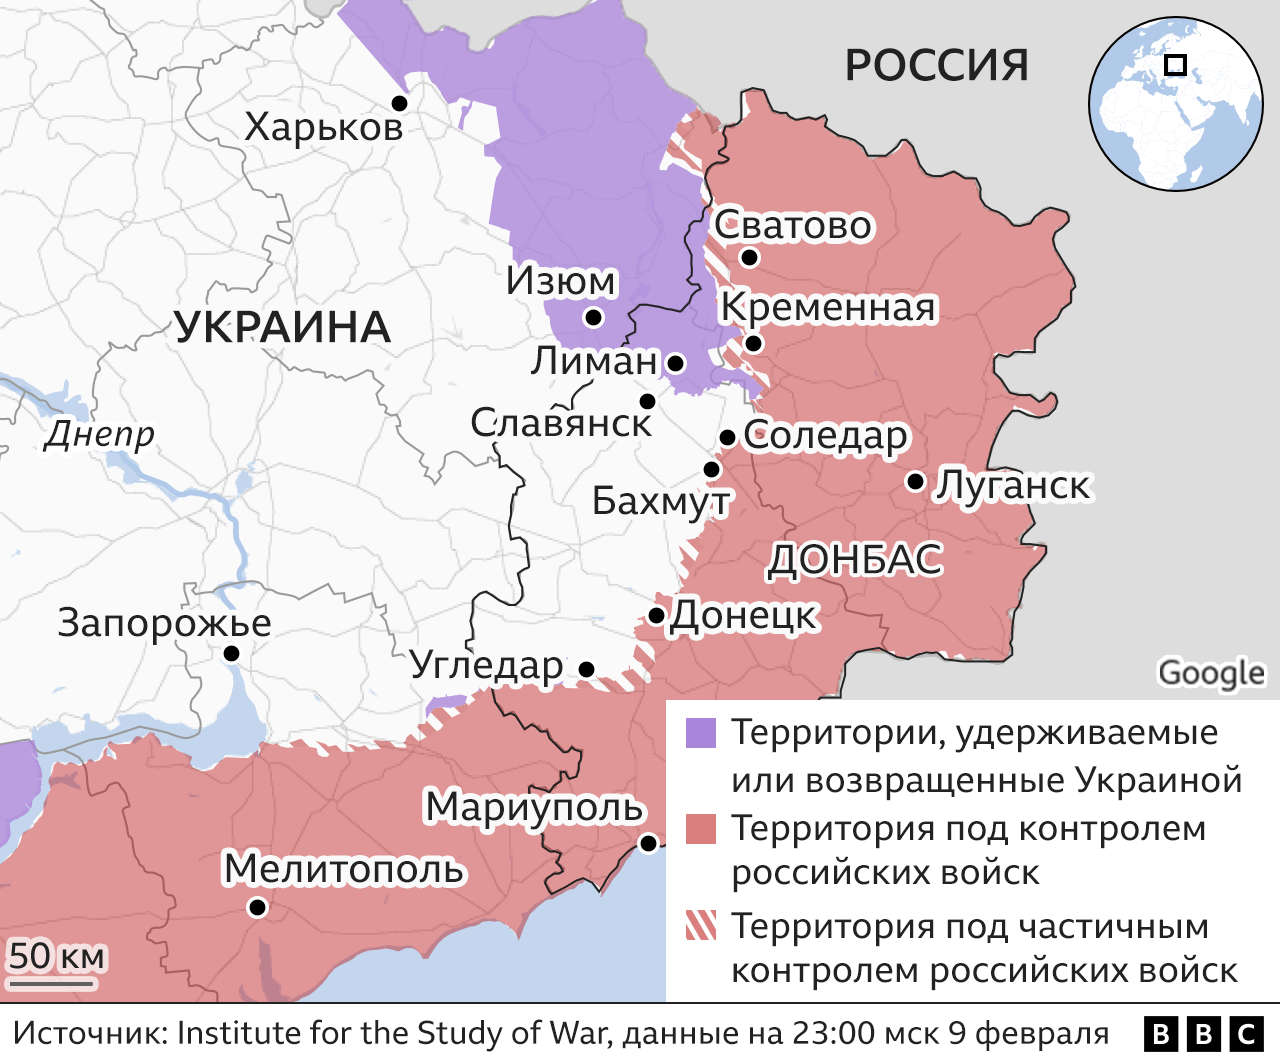 Началось ли большое российское наступление в Украине? - BBC News Русскаяслужба